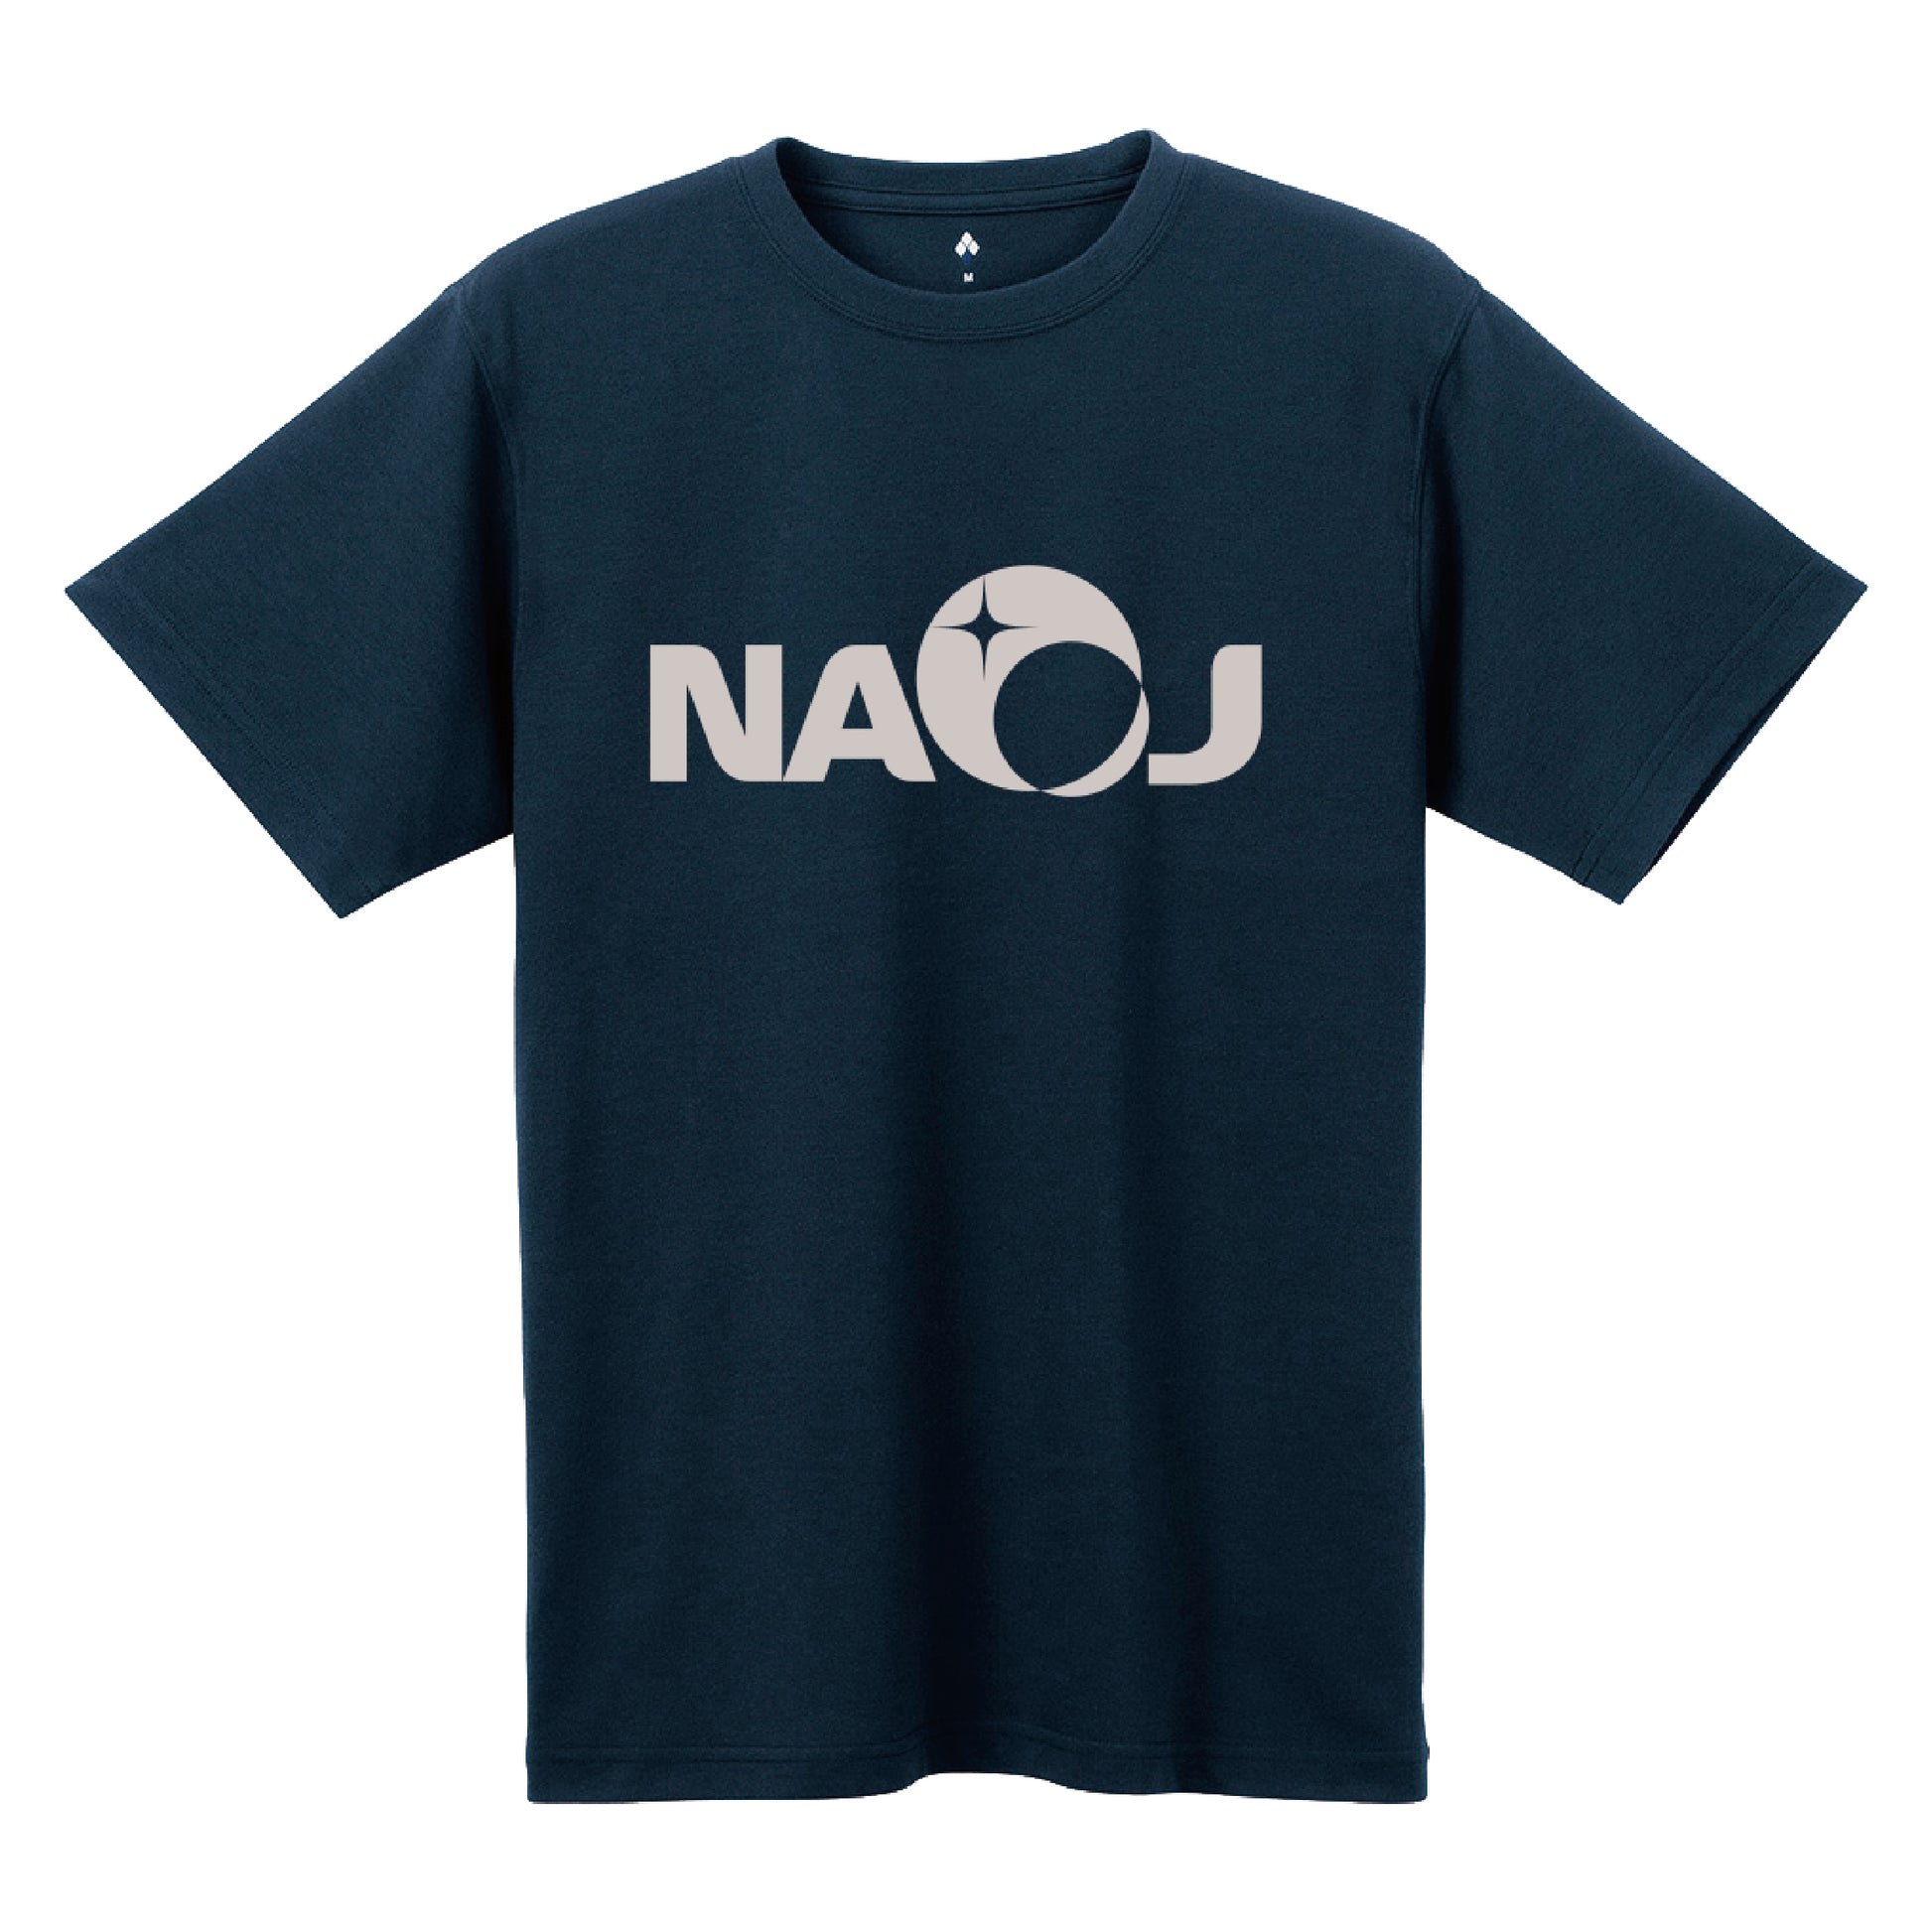 国立天文台 NAOJ ロゴマーク WIC. Tシャツ ネイビー M 00